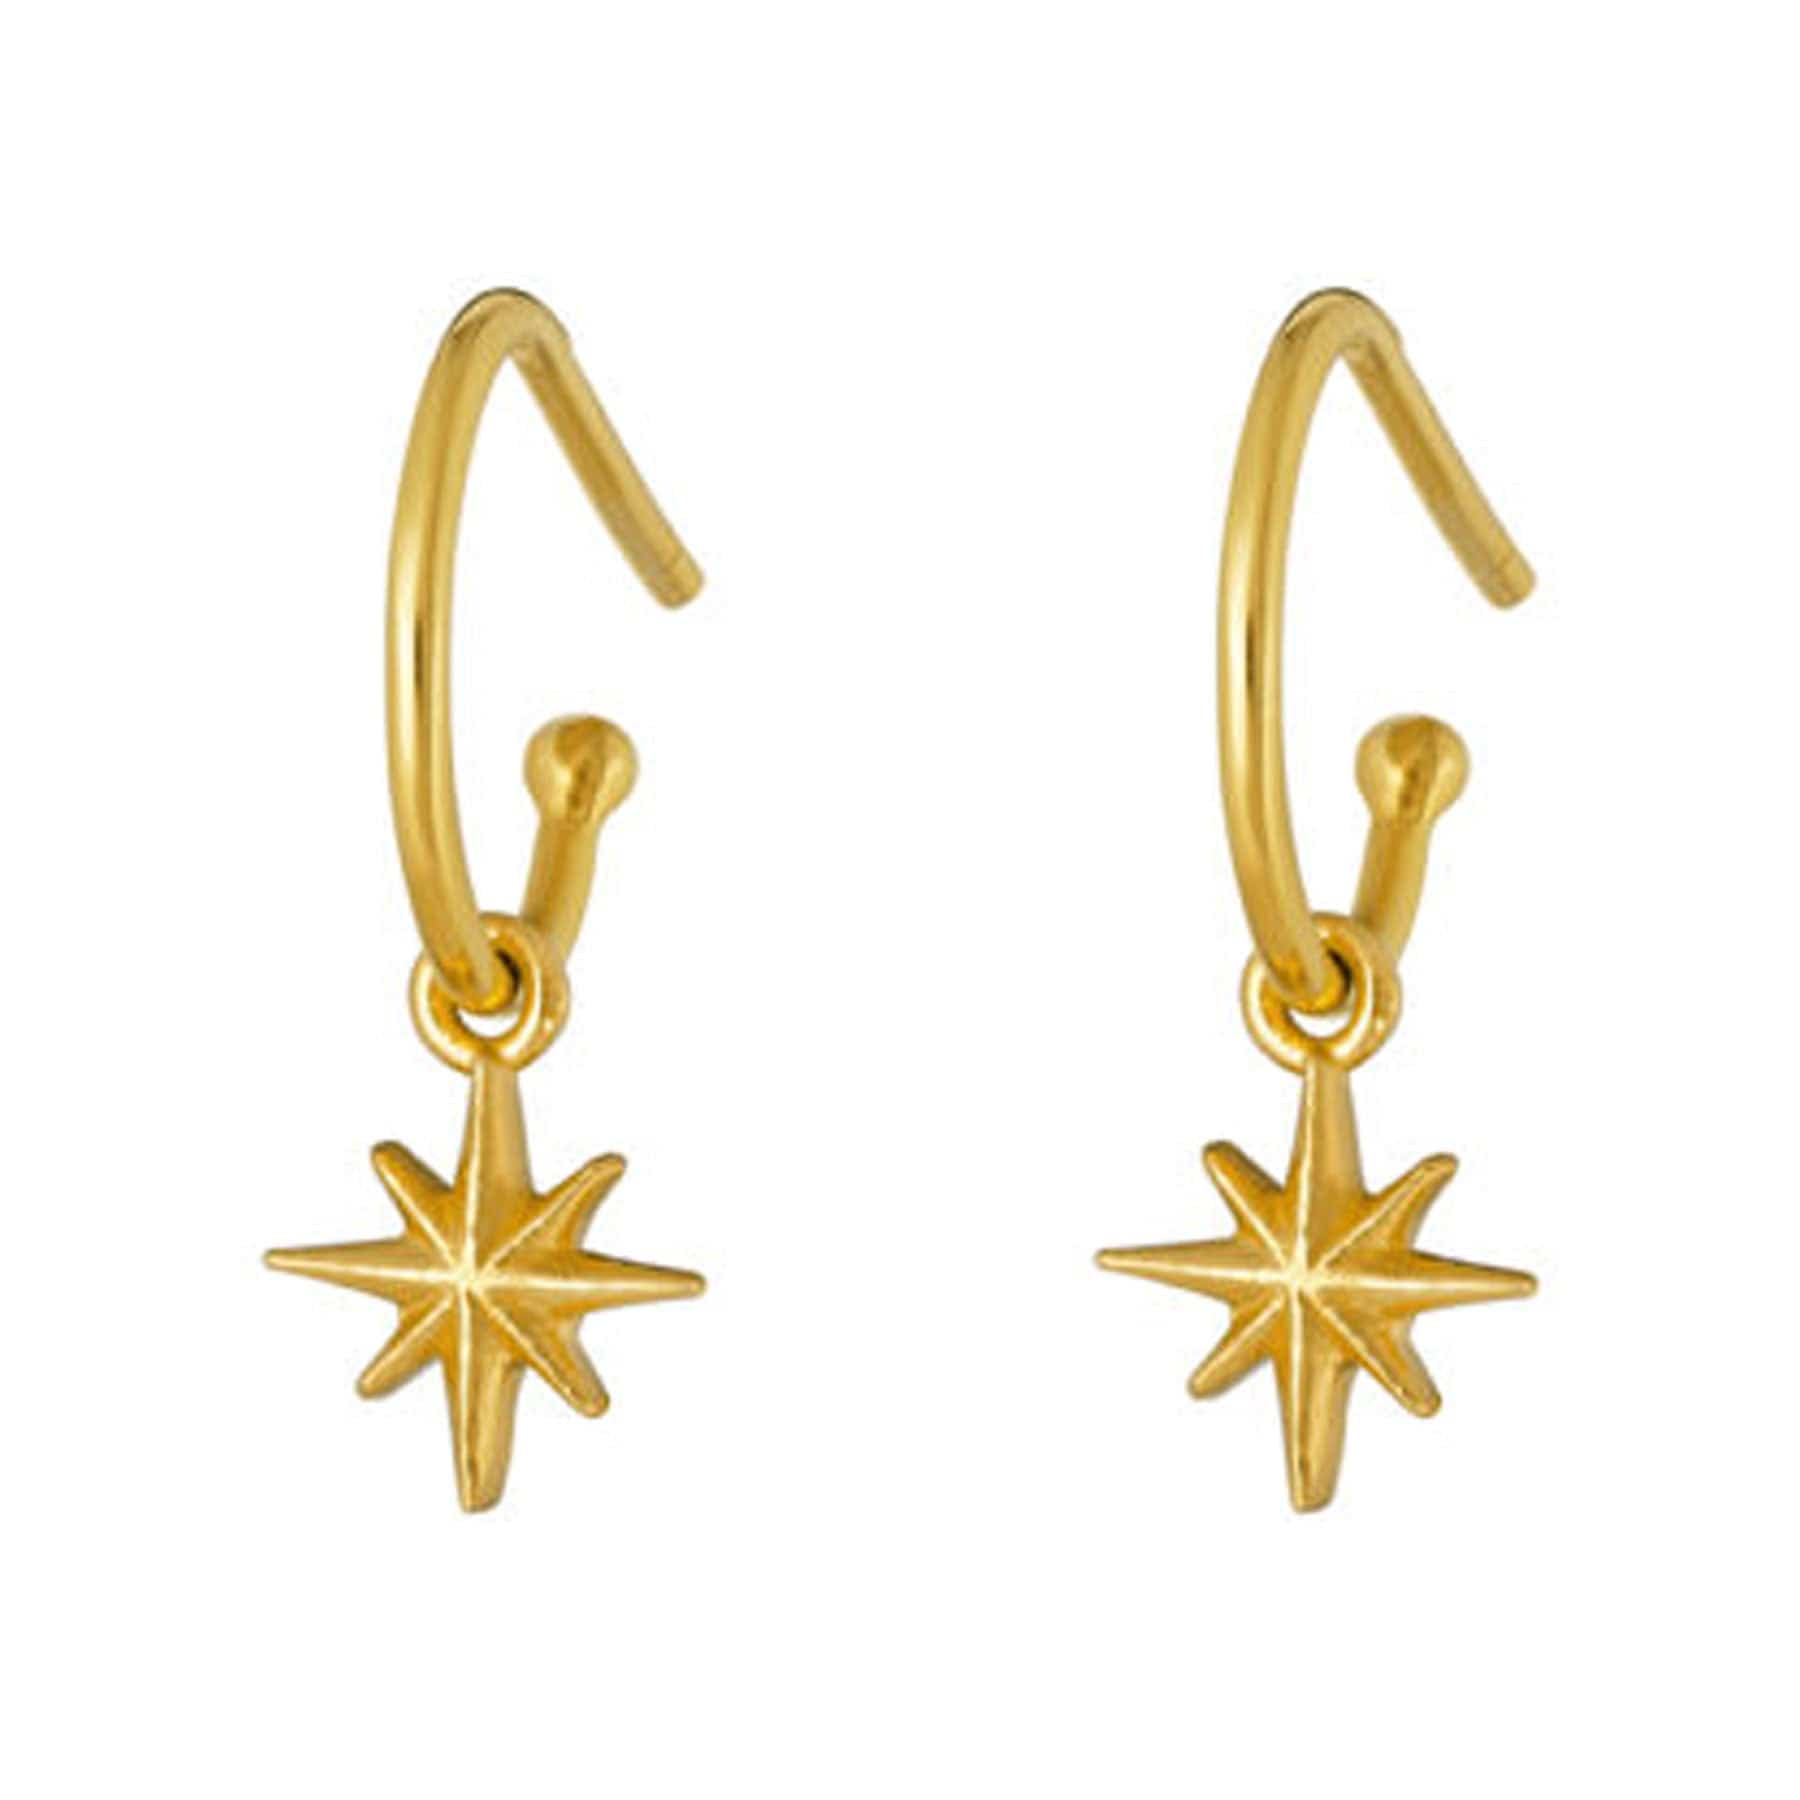 Gold star light earrings